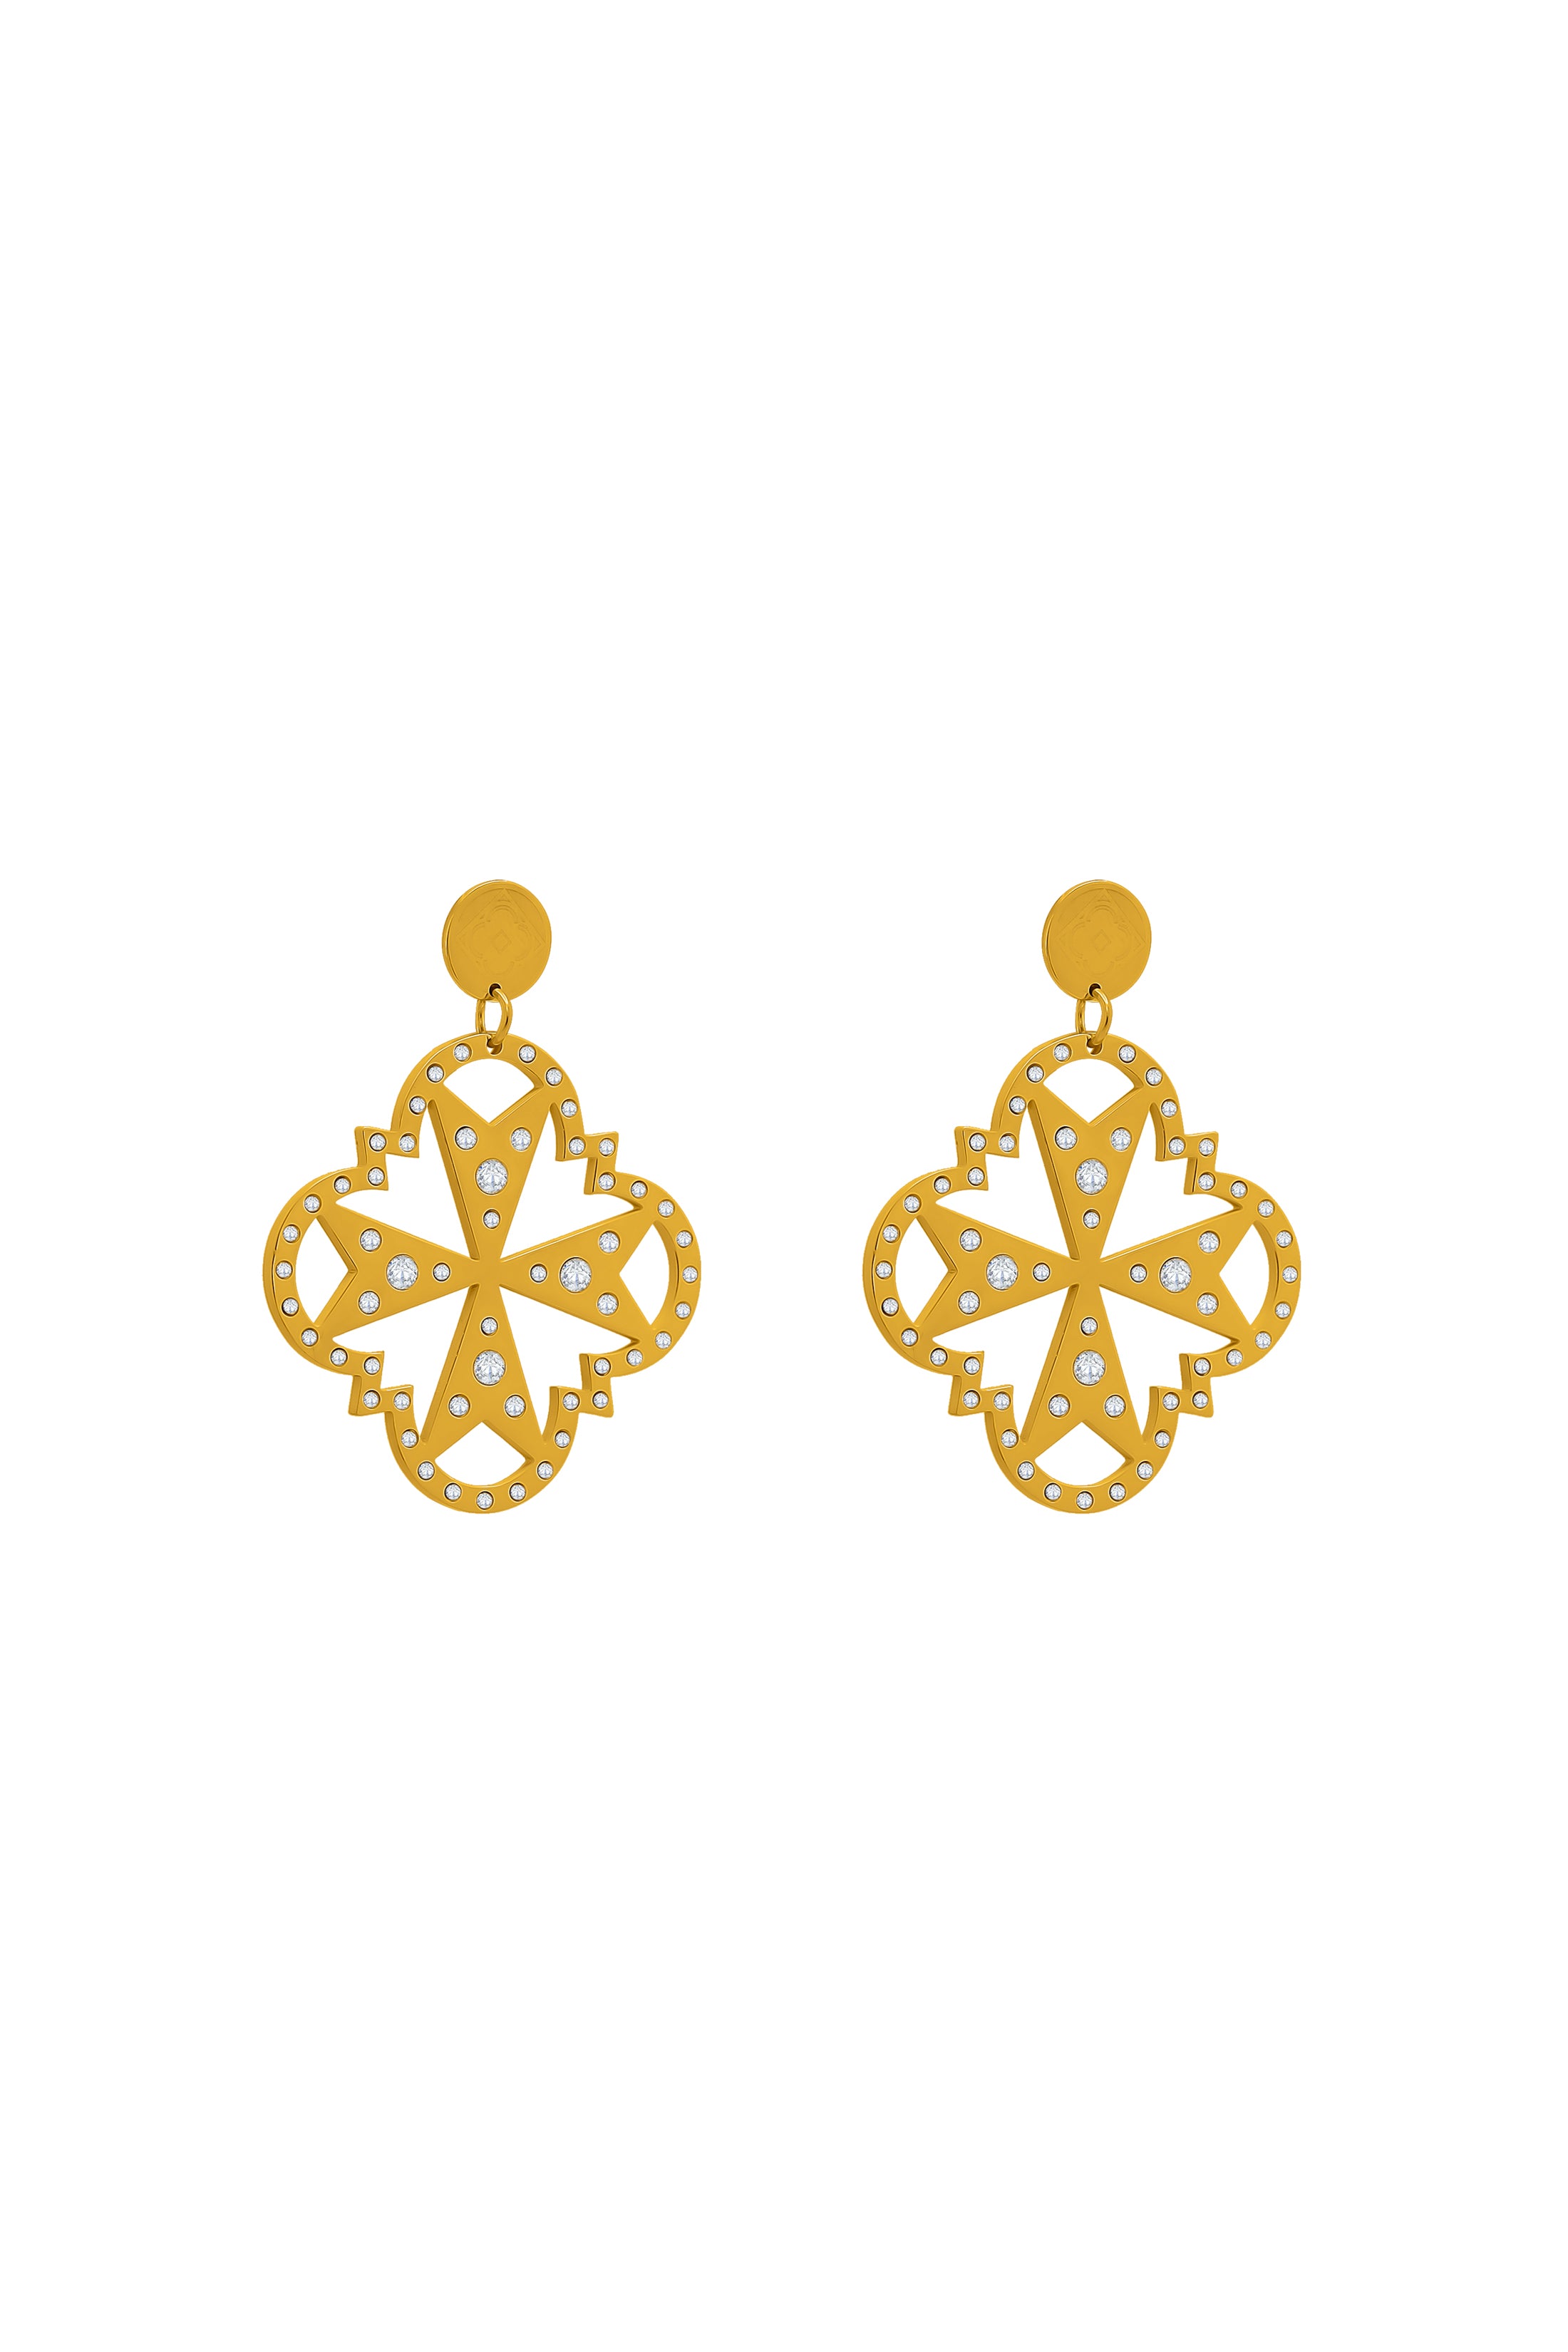 Ruth’s Maltese Cross Earrings